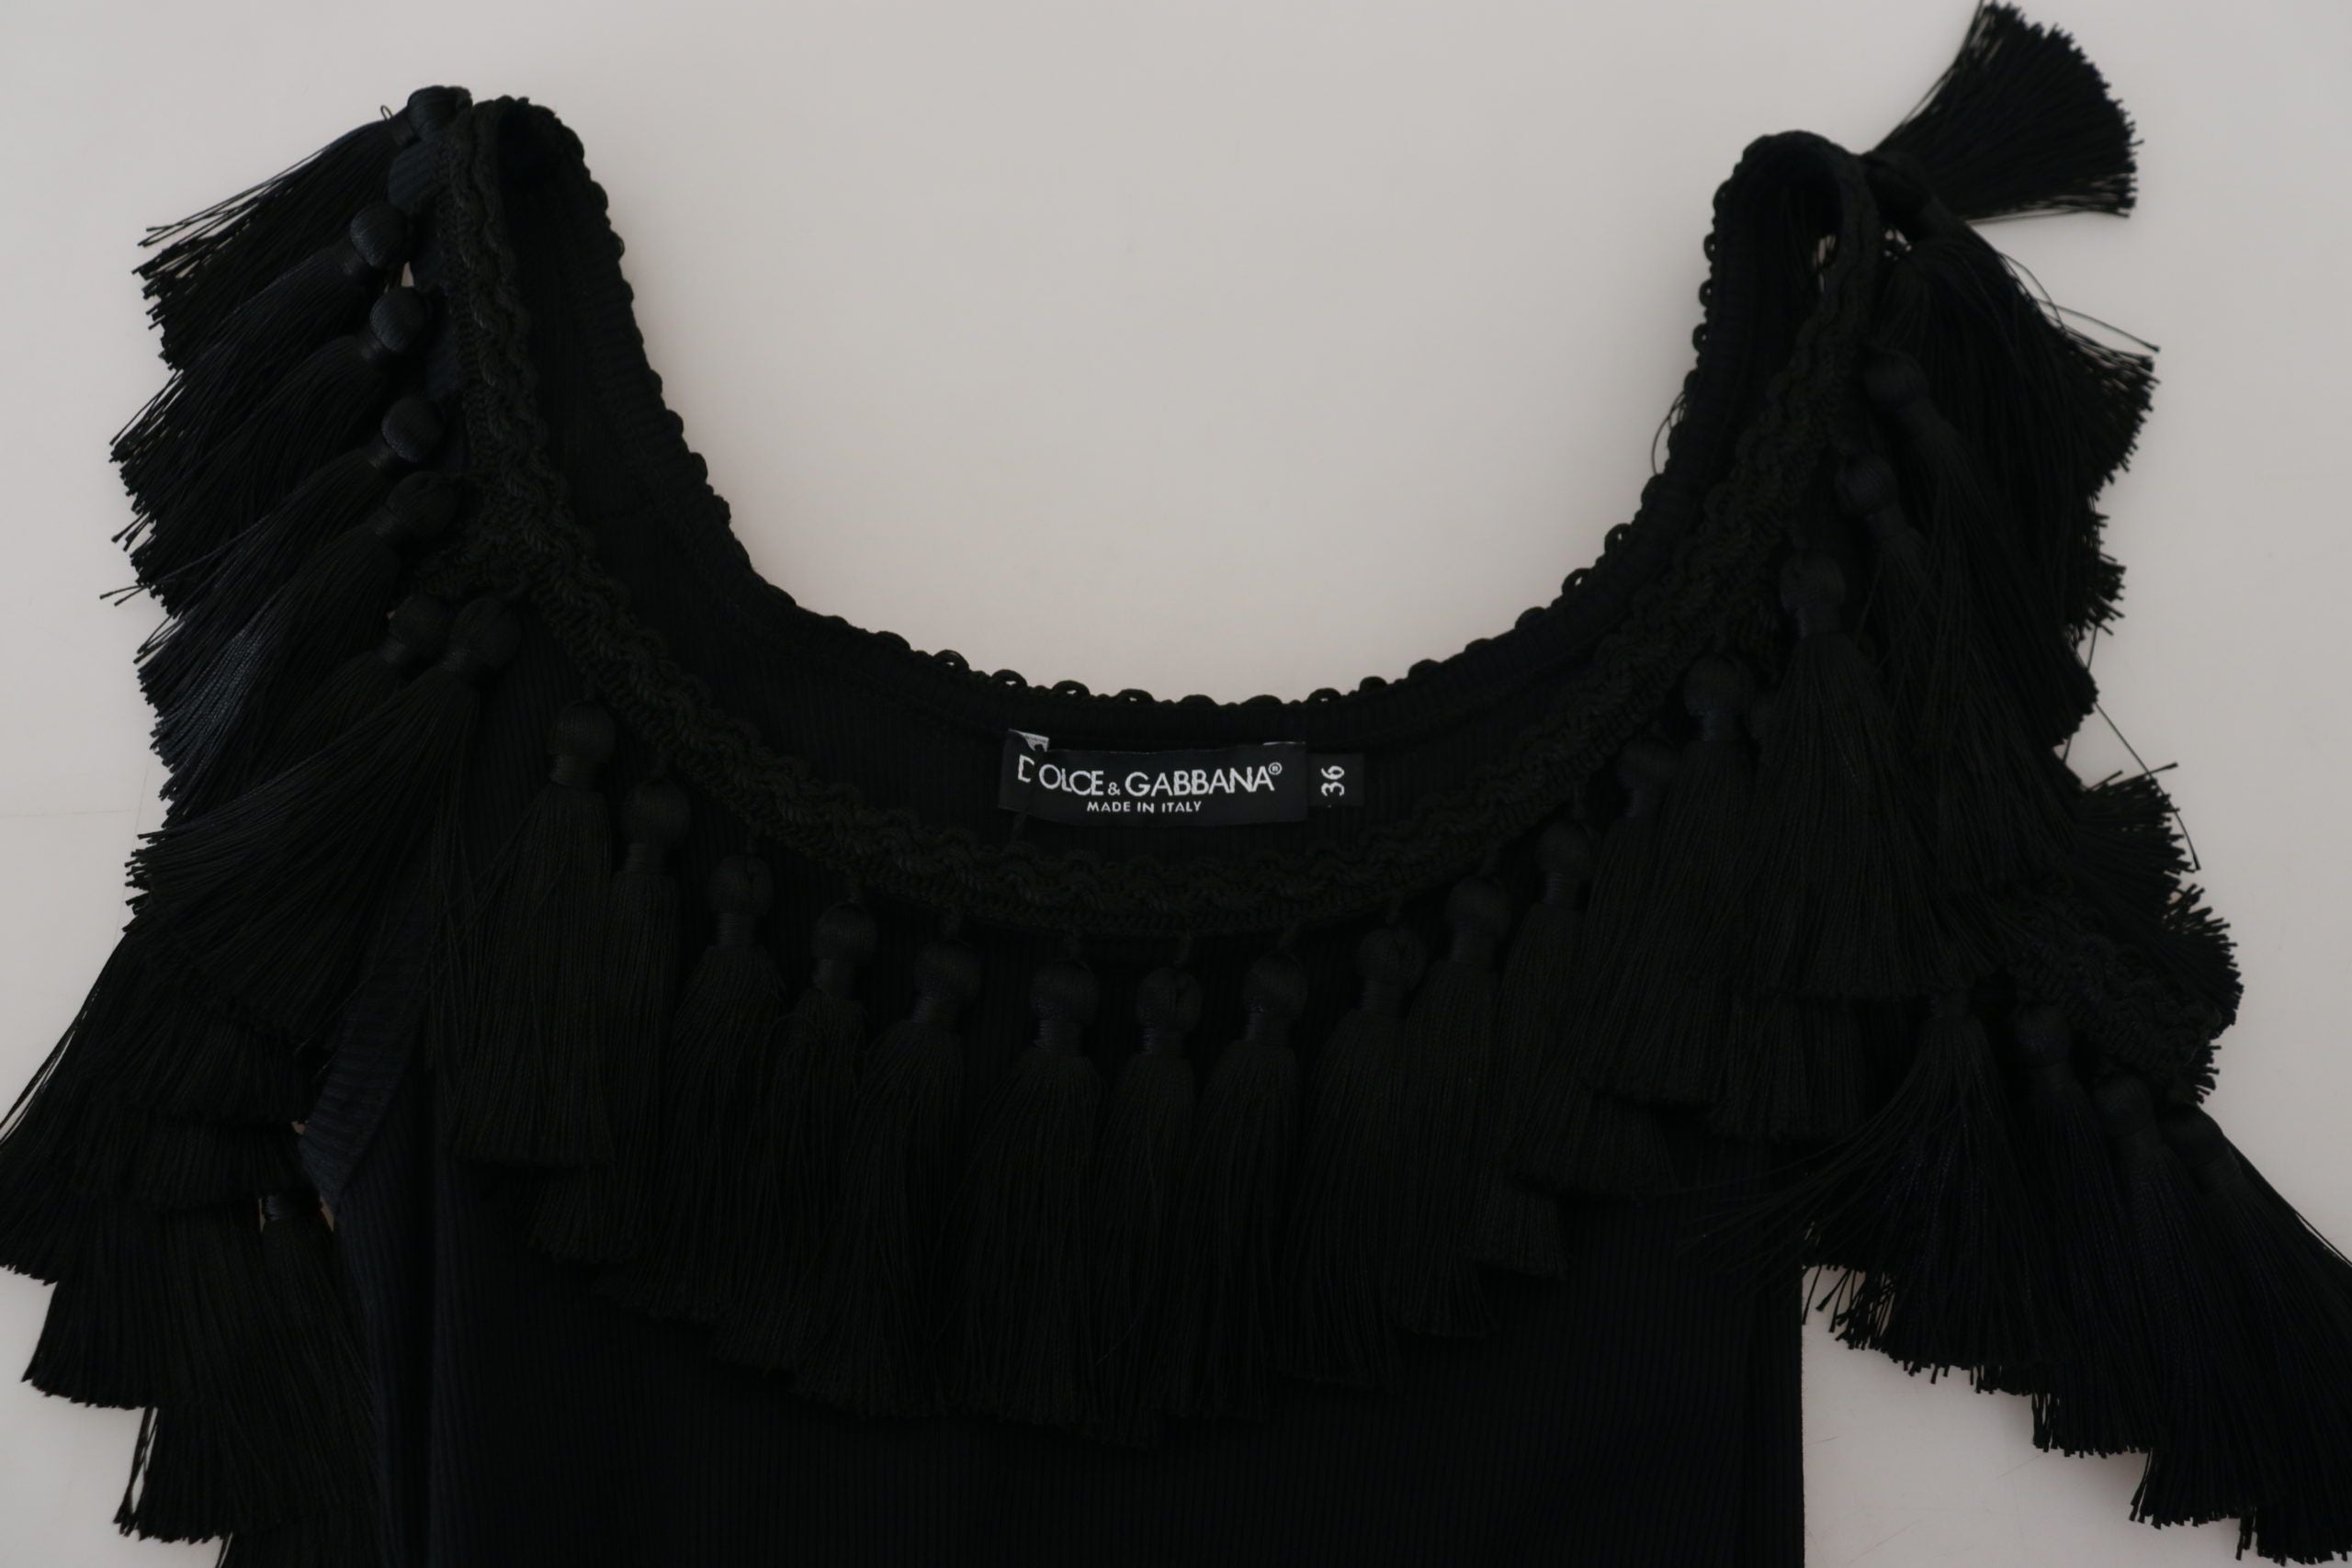 Dolce & Gabbana Elegant Black Cotton Tank Top Blouse